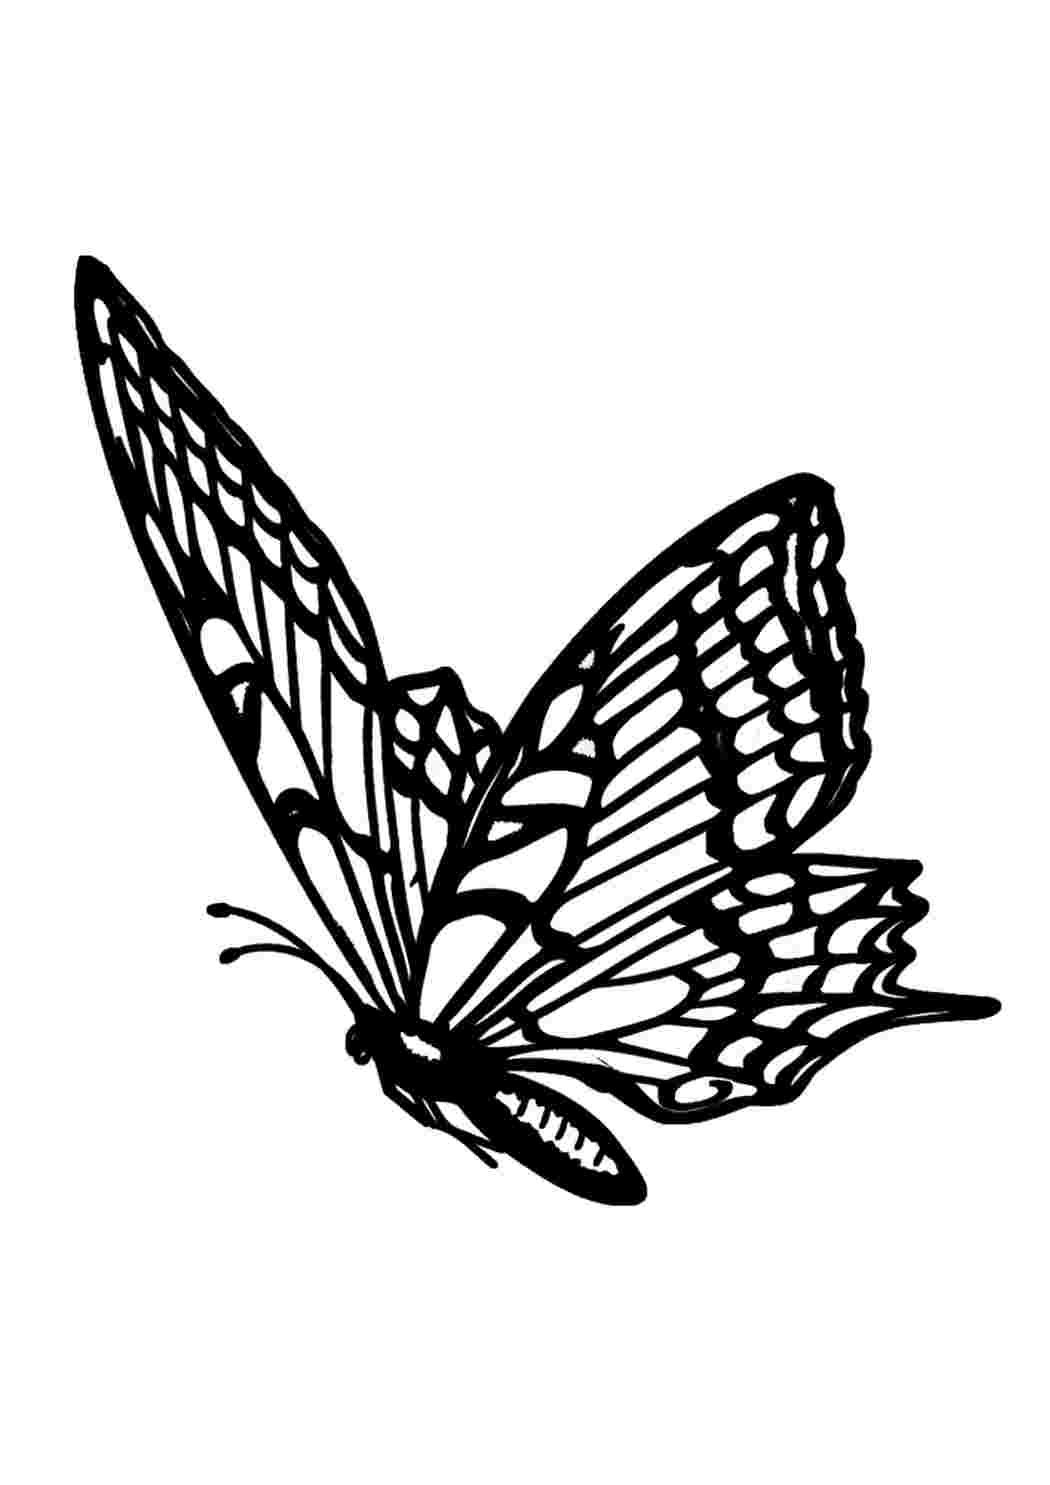 Бабочки для срисовки черно белые - 73 фото